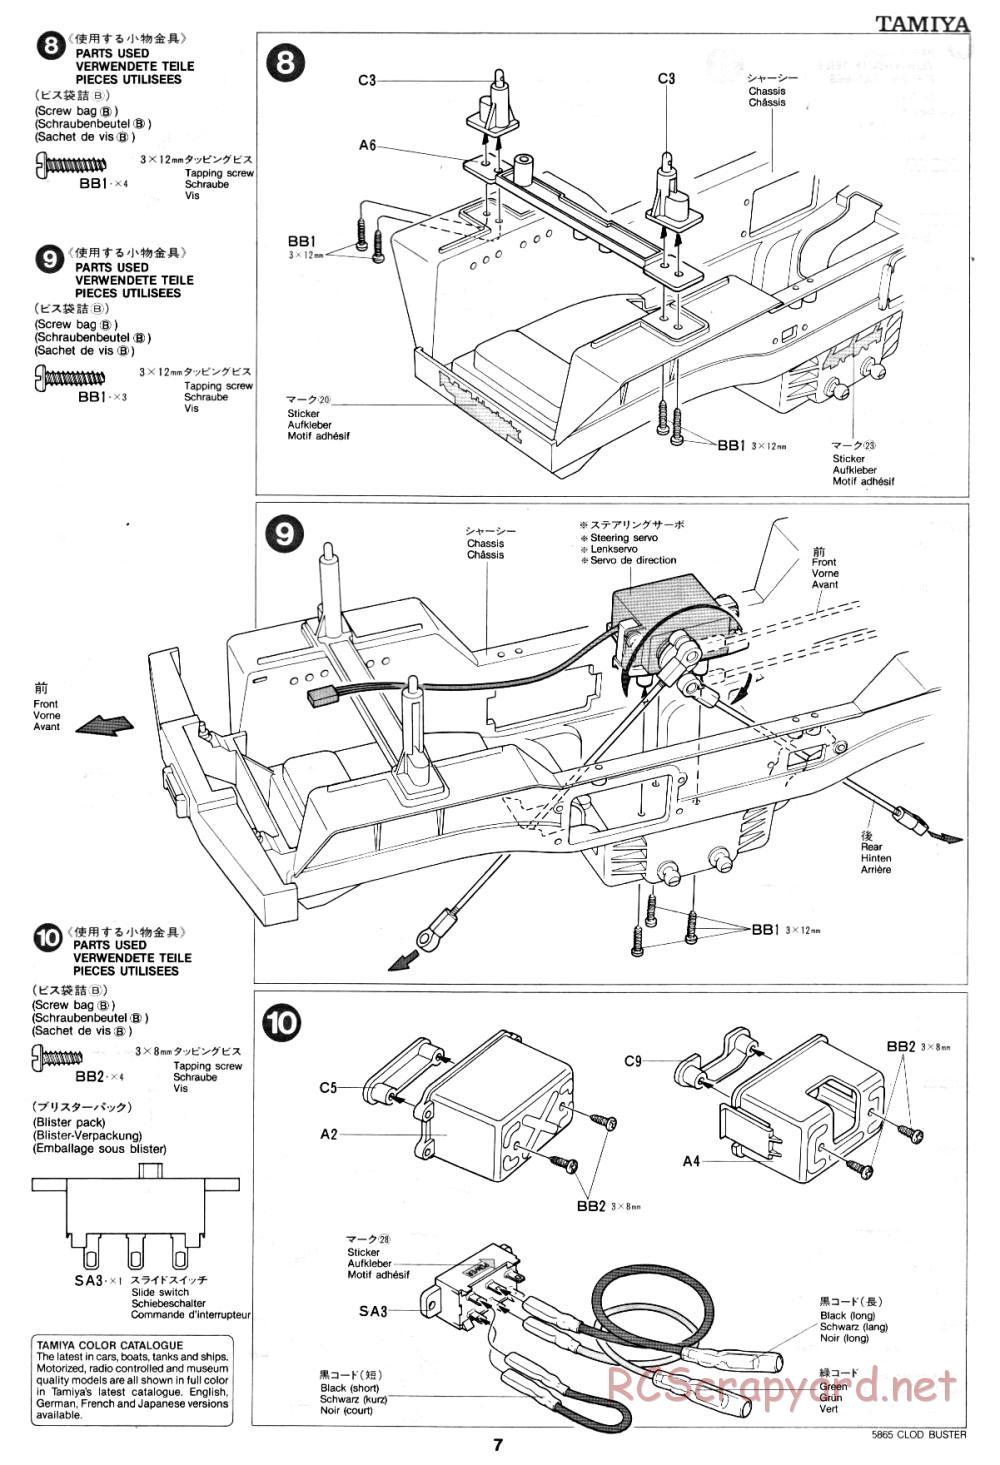 Tamiya - Clod Buster - 58065 - Manual - Page 7